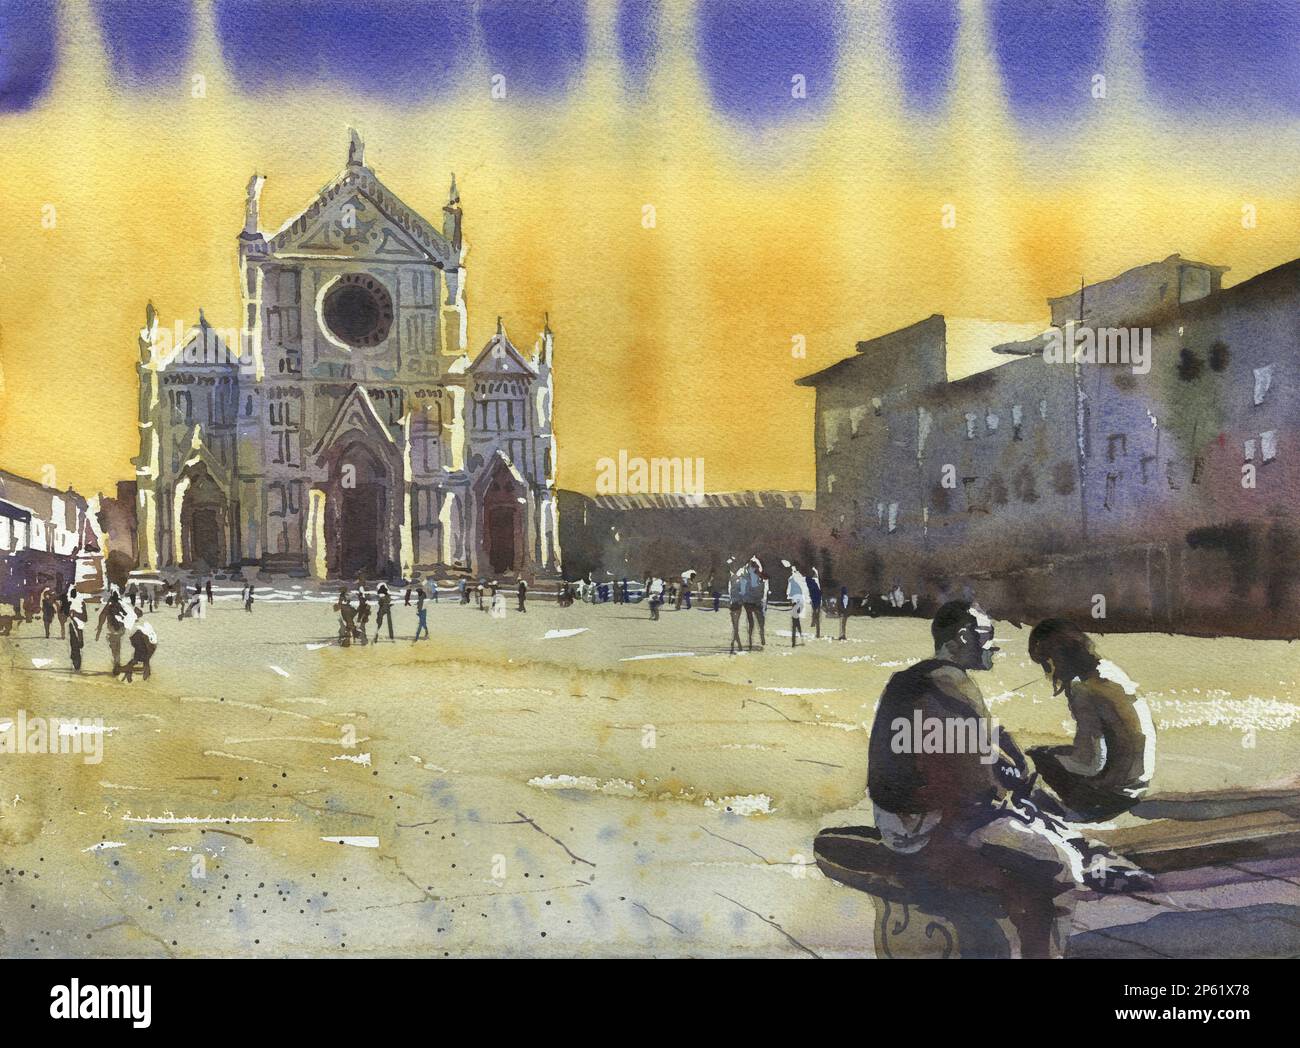 Peinture de Florence, Italie église au coucher du soleil. Eglise de Santa Croce dans la ville médiévale de Florence Italie au coucher du soleil la décoration italienne d'art Banque D'Images